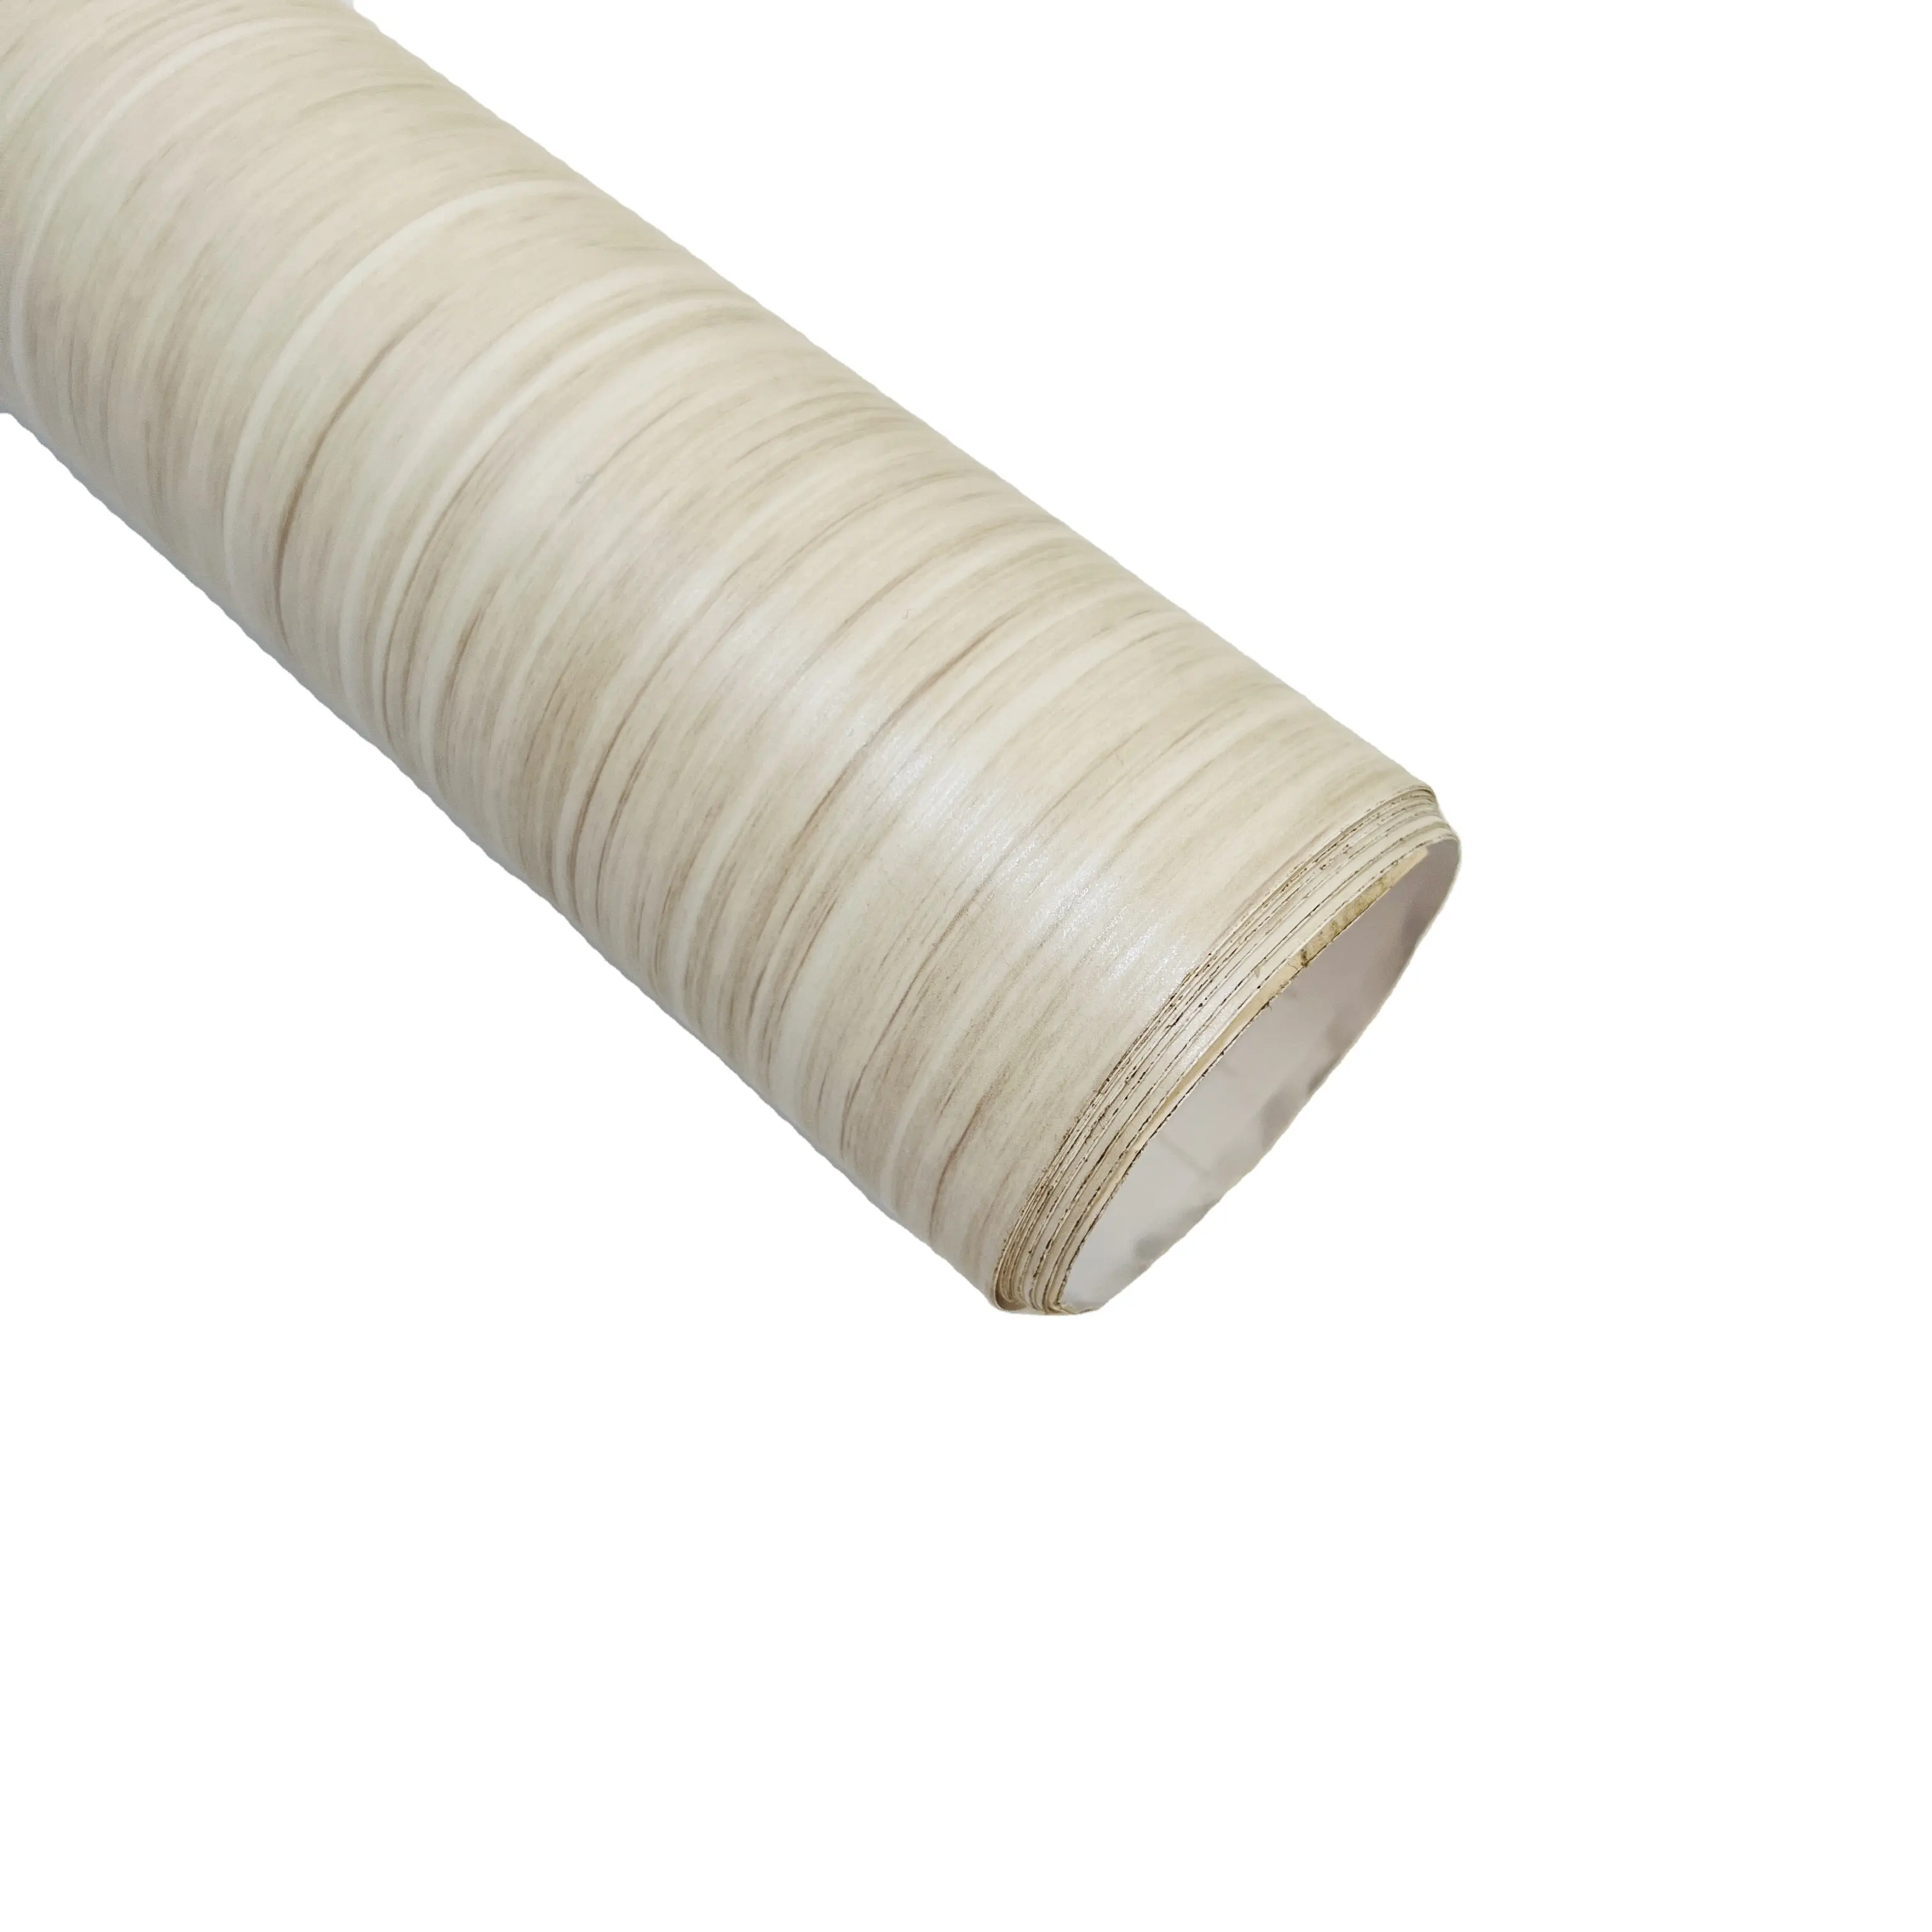 Texturizados madeira descascar & vara papel de parede para hotel renovação rústico madeira adesivo wallpaper original madeira aparência wallpaper